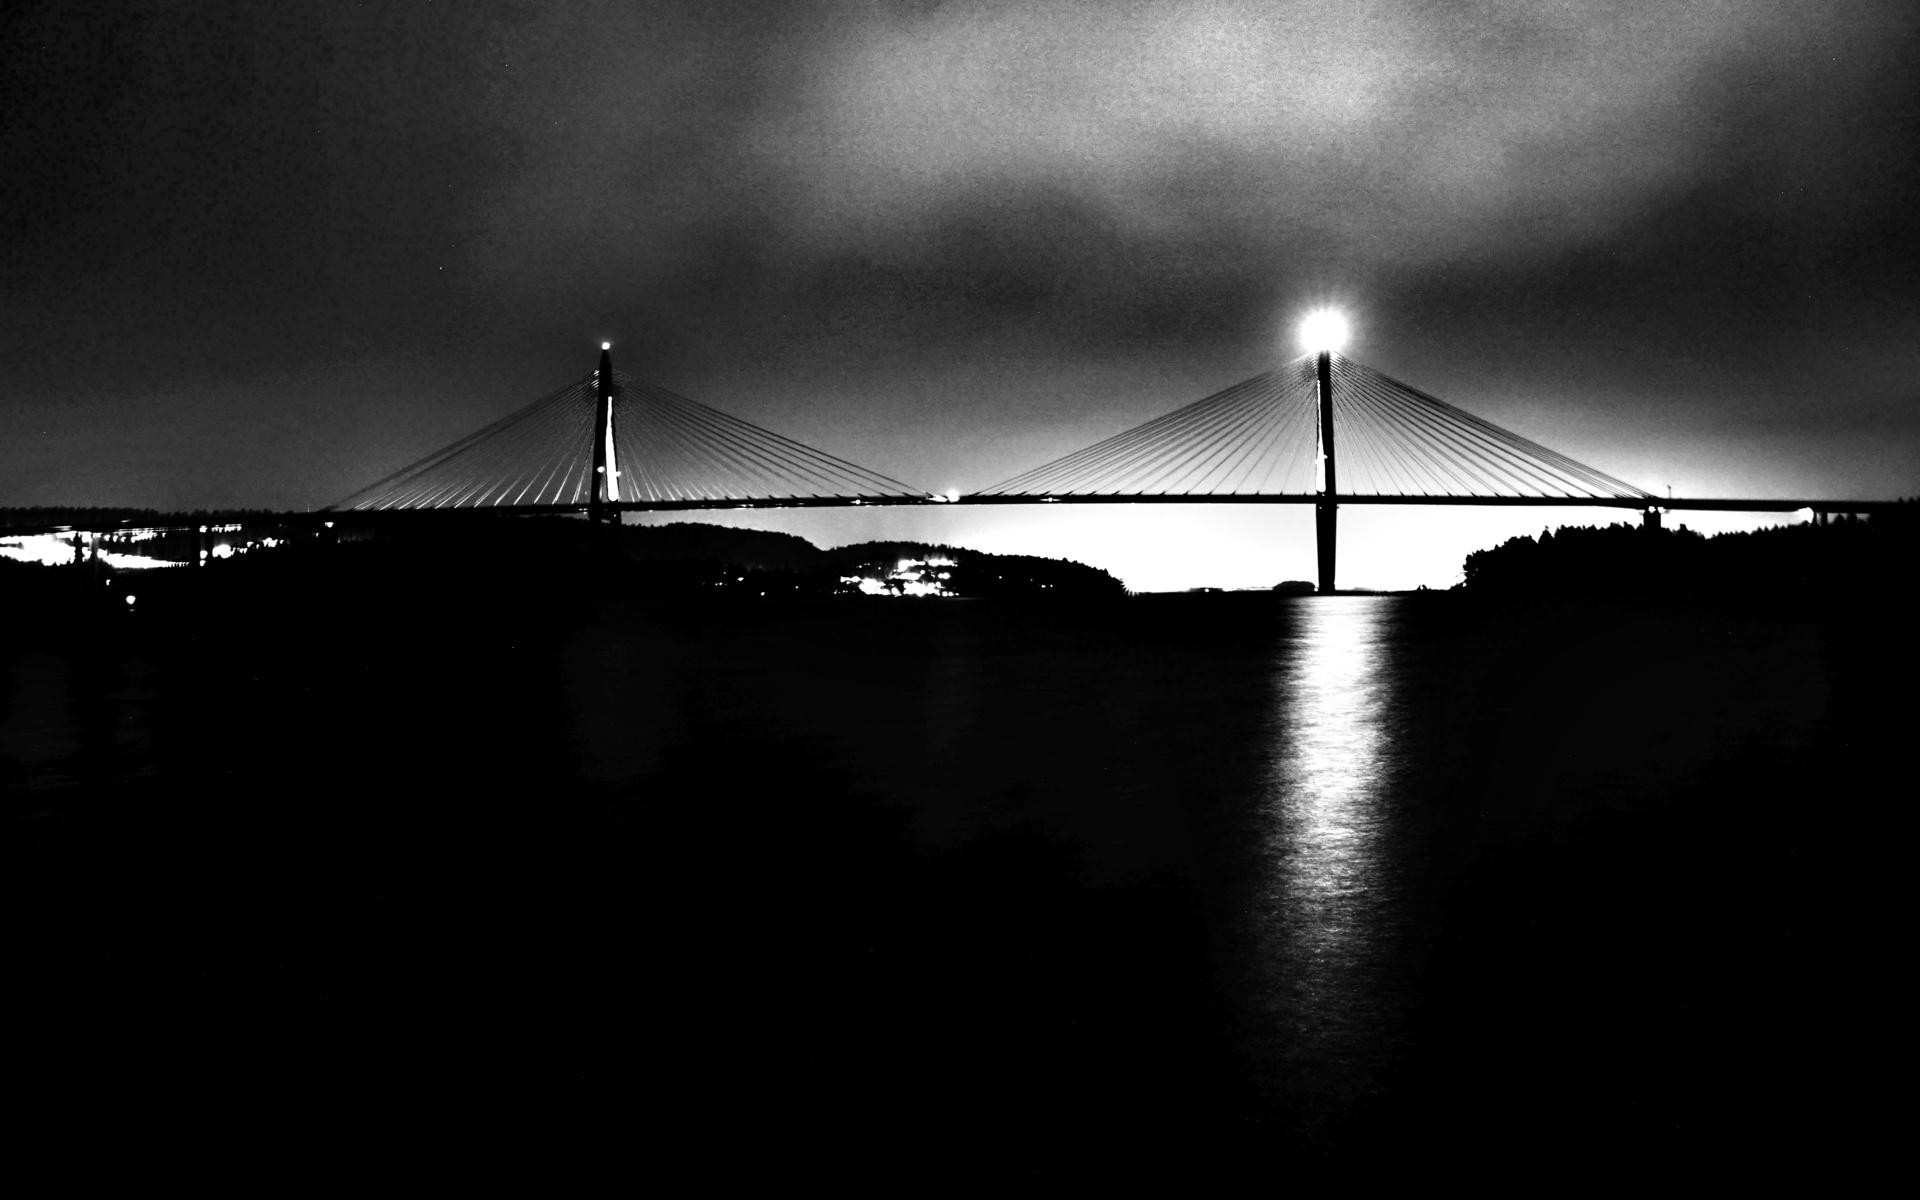 ”En bild från skärets brygga 26/1 -22 där vi ser uddevallabron en rå och blåsig vinterkväll.”